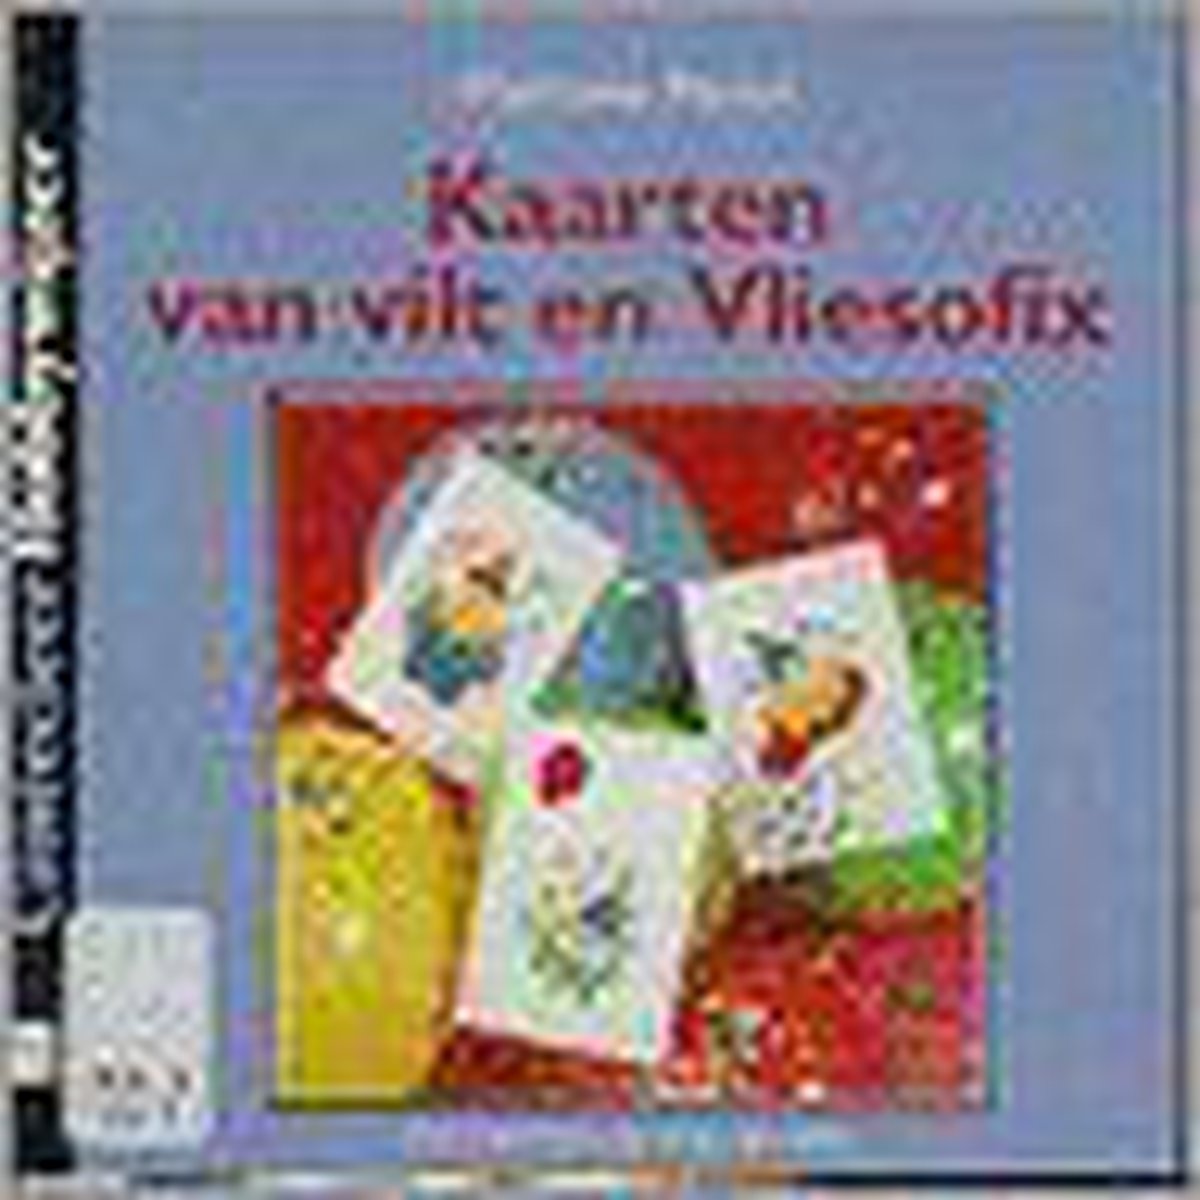 Kaarten van vilt en Vliesofix / Cantecleer hobbywijzer / 99